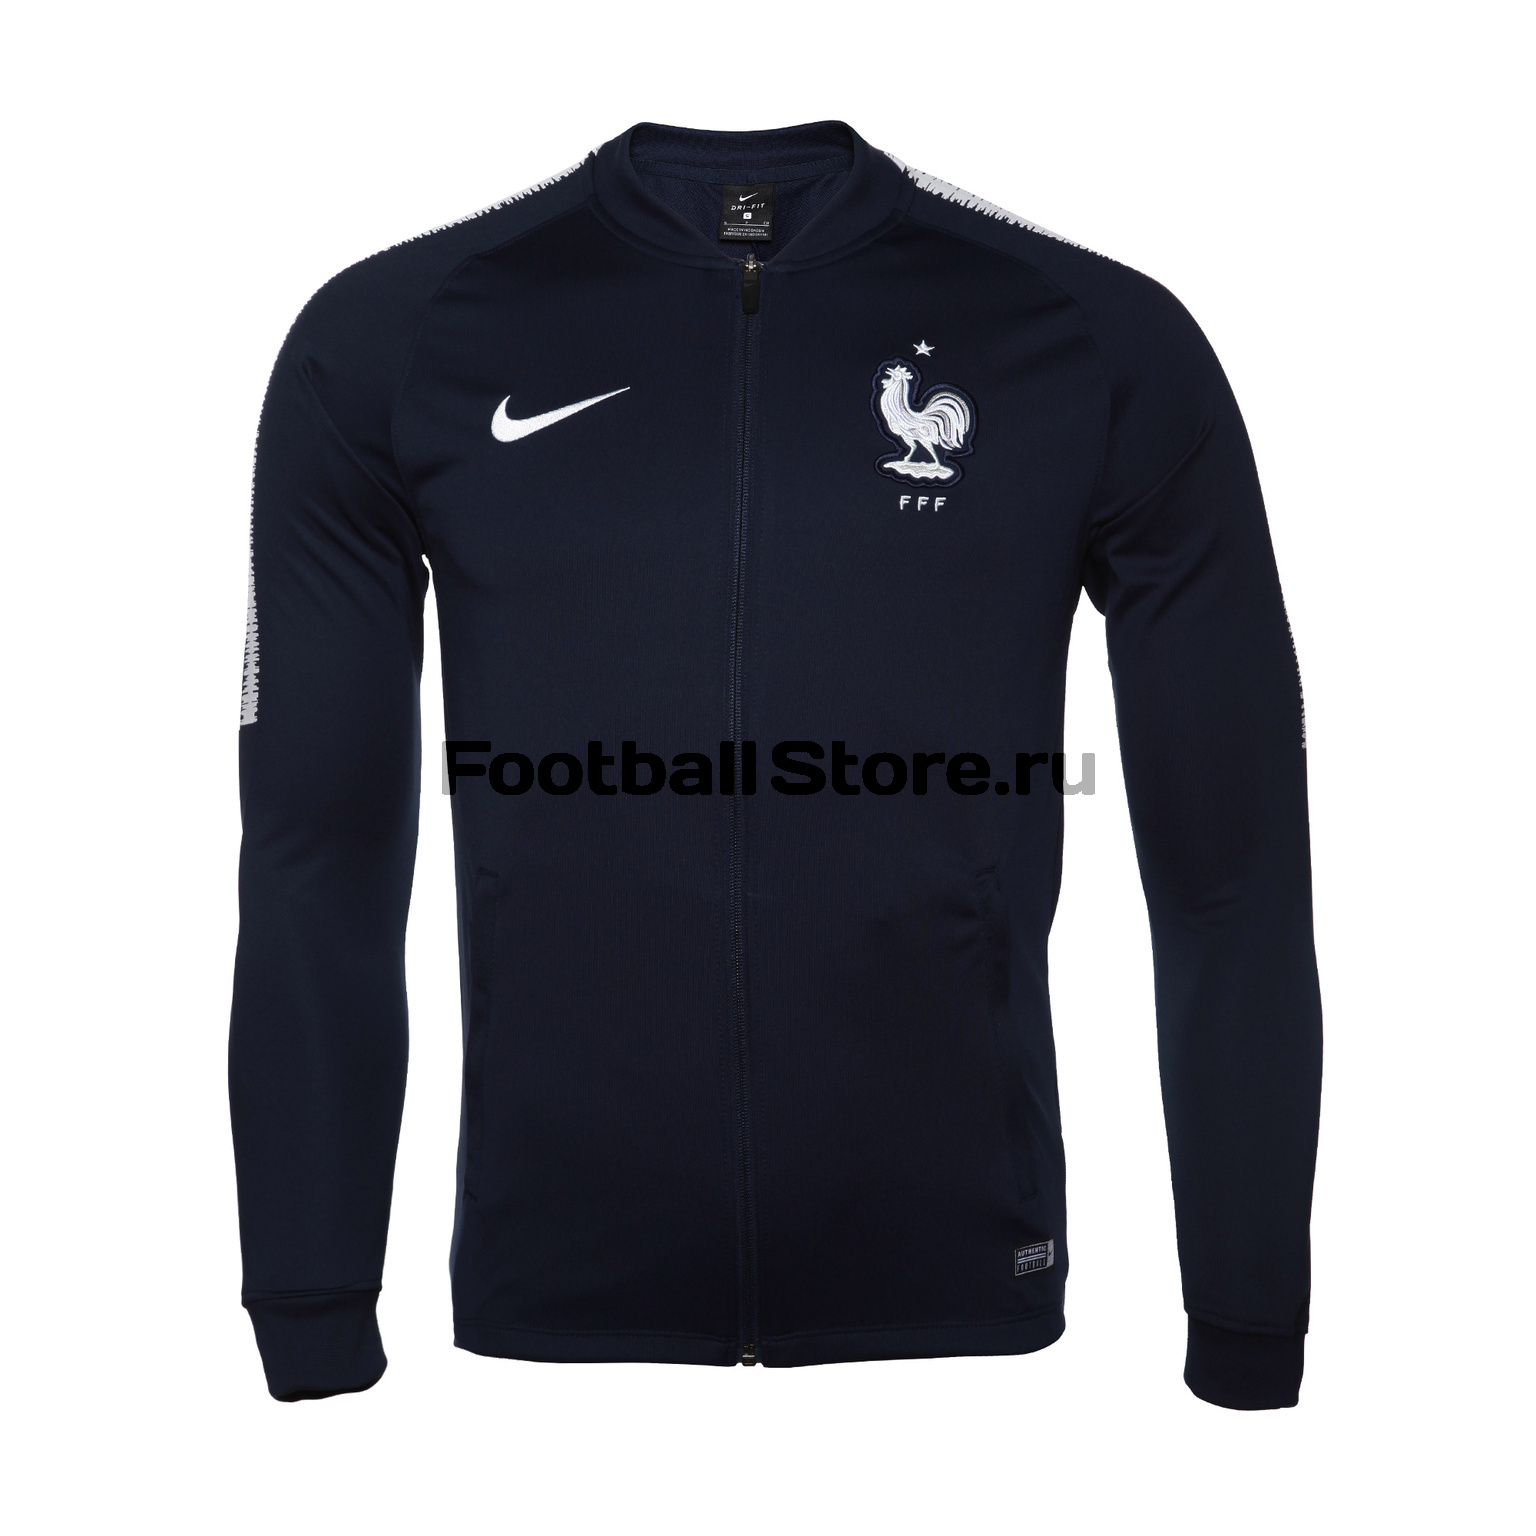 Спортивный костюм Nike сборной Франции 893384-451 